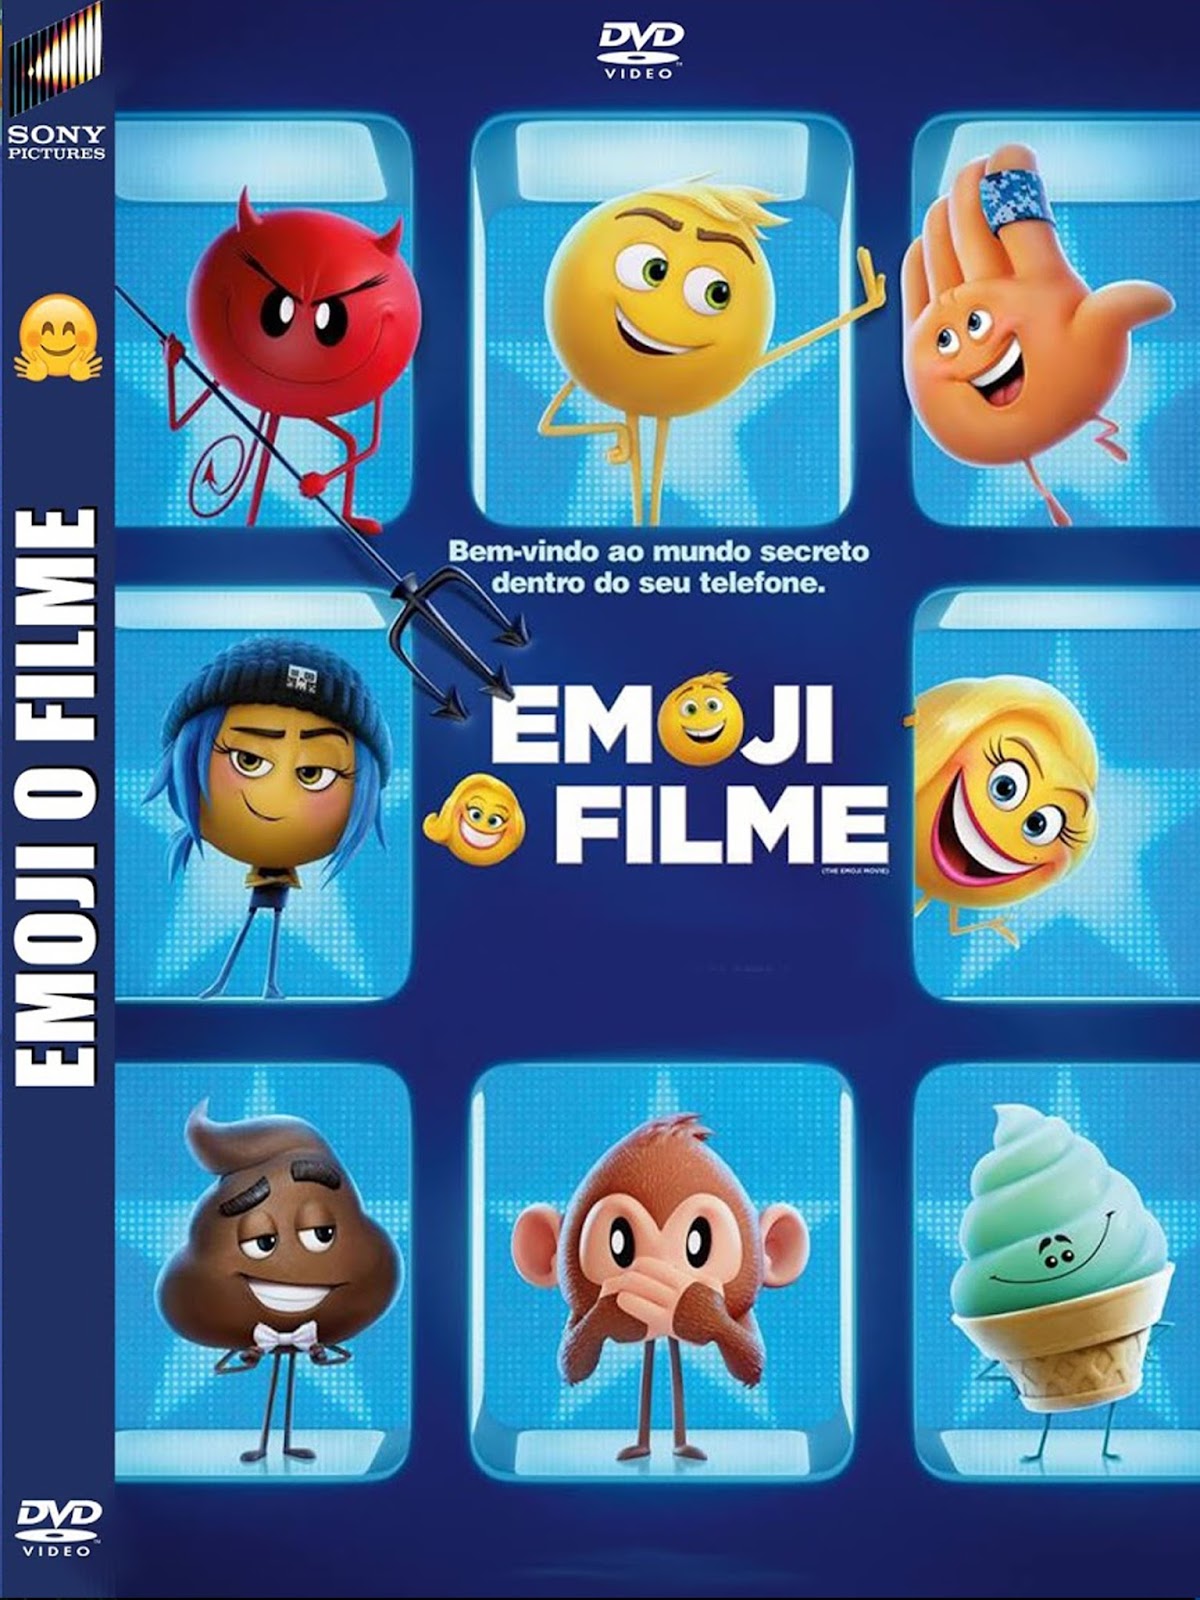 download emoji movie torrent